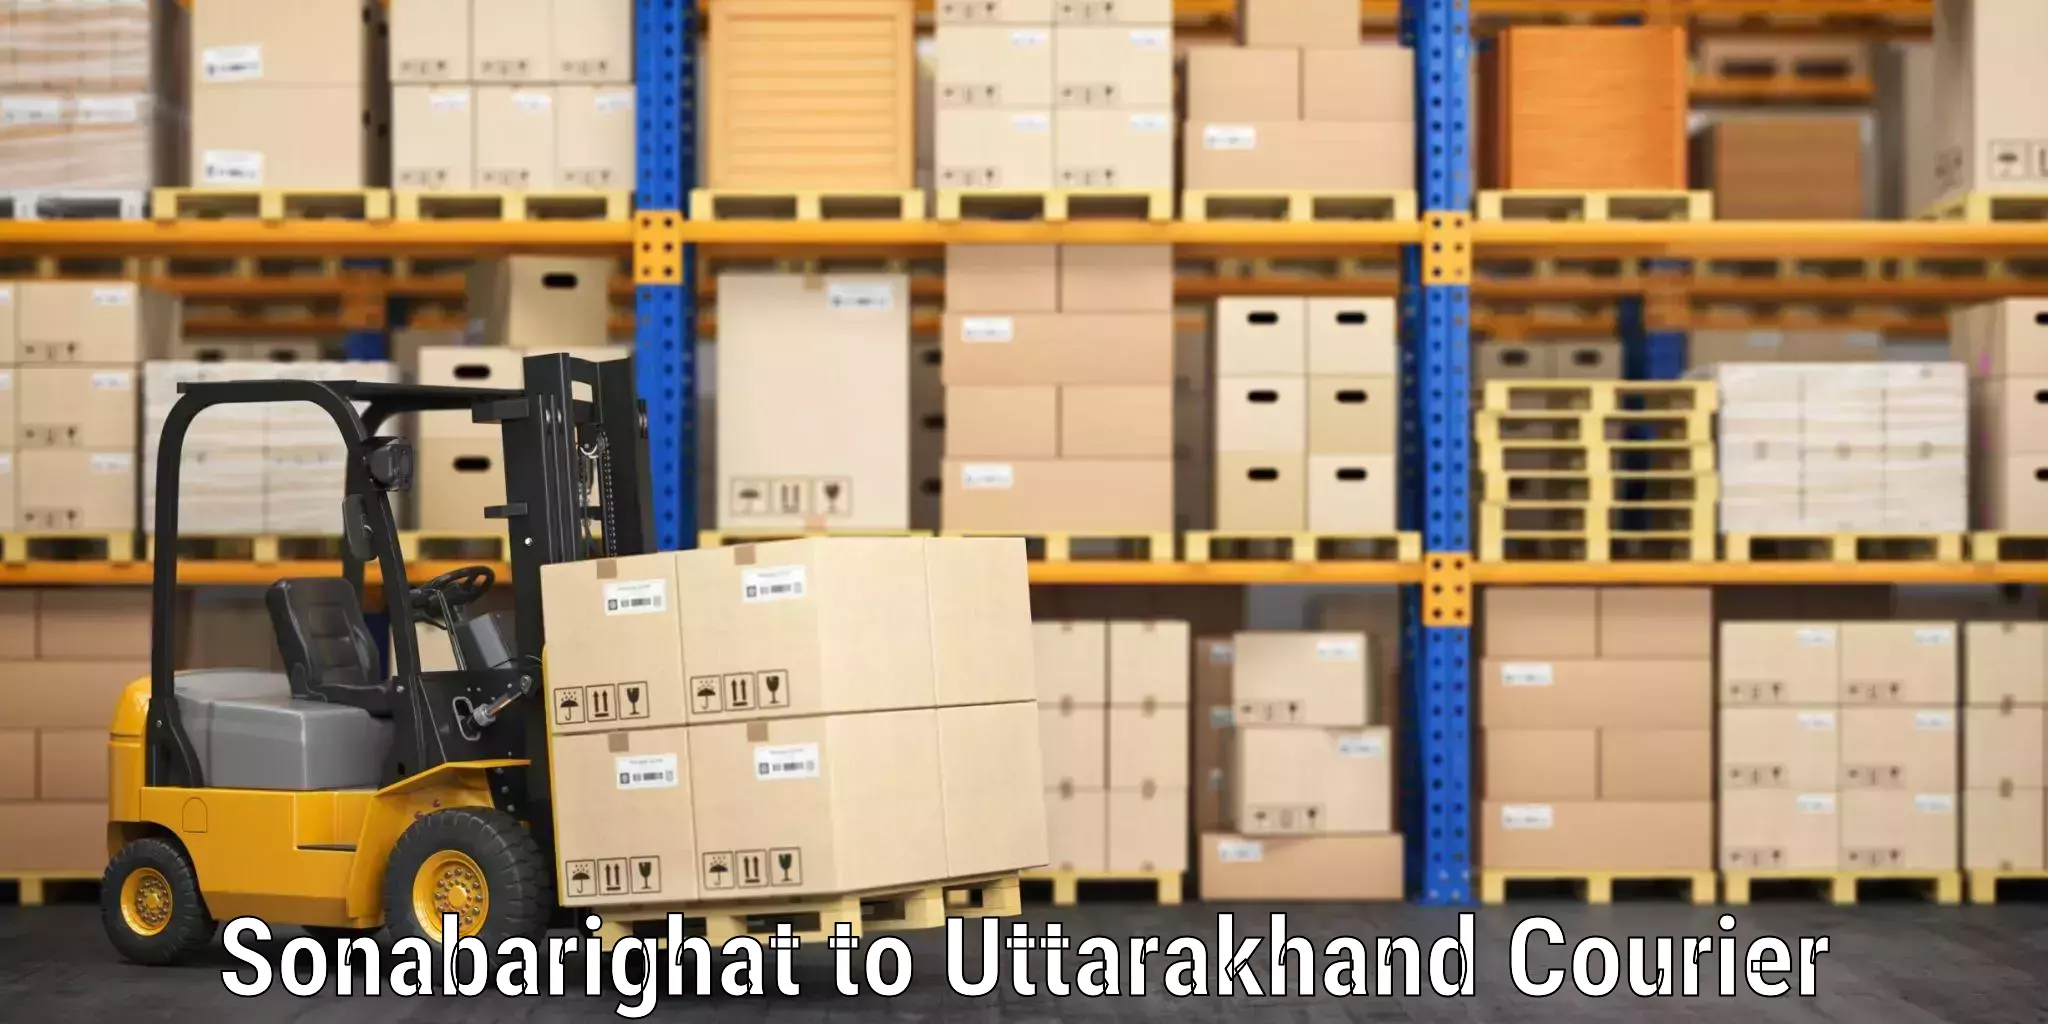 Luggage transport operations Sonabarighat to Uttarakhand